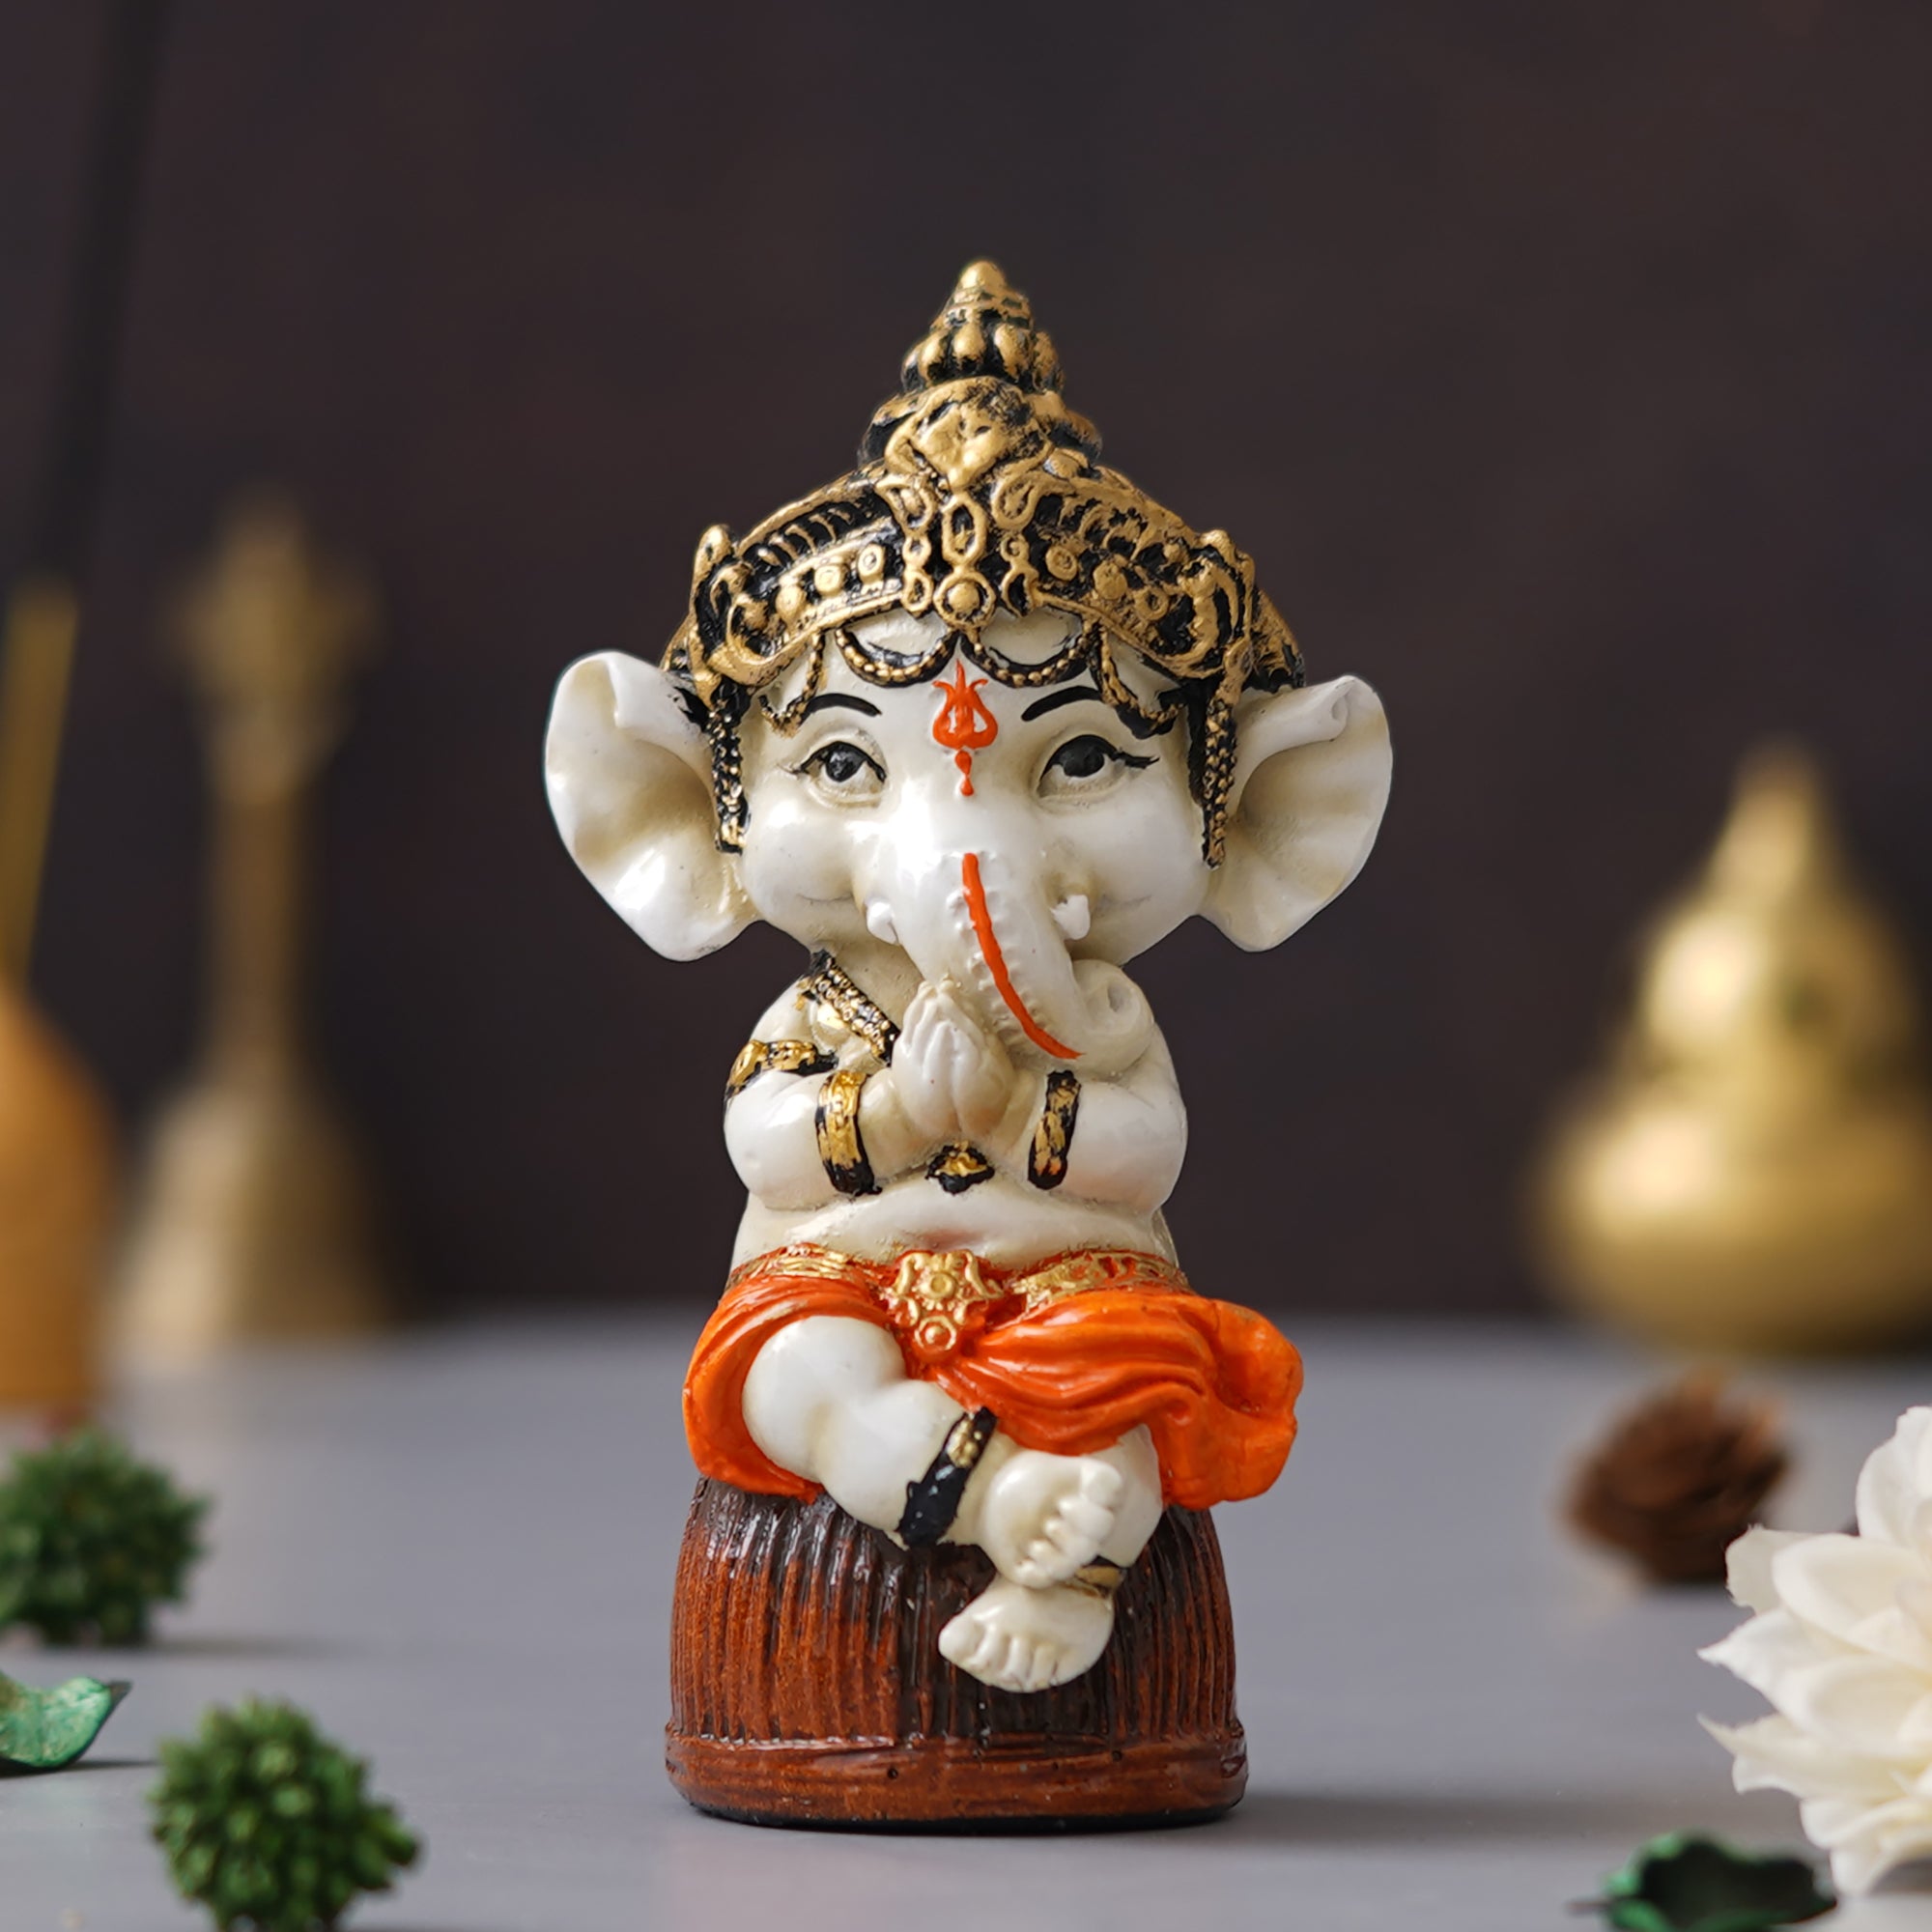 eCraftIndia Orange Polyresin Handcrafted Lord Ganesha Idol Sitting on Rock 4